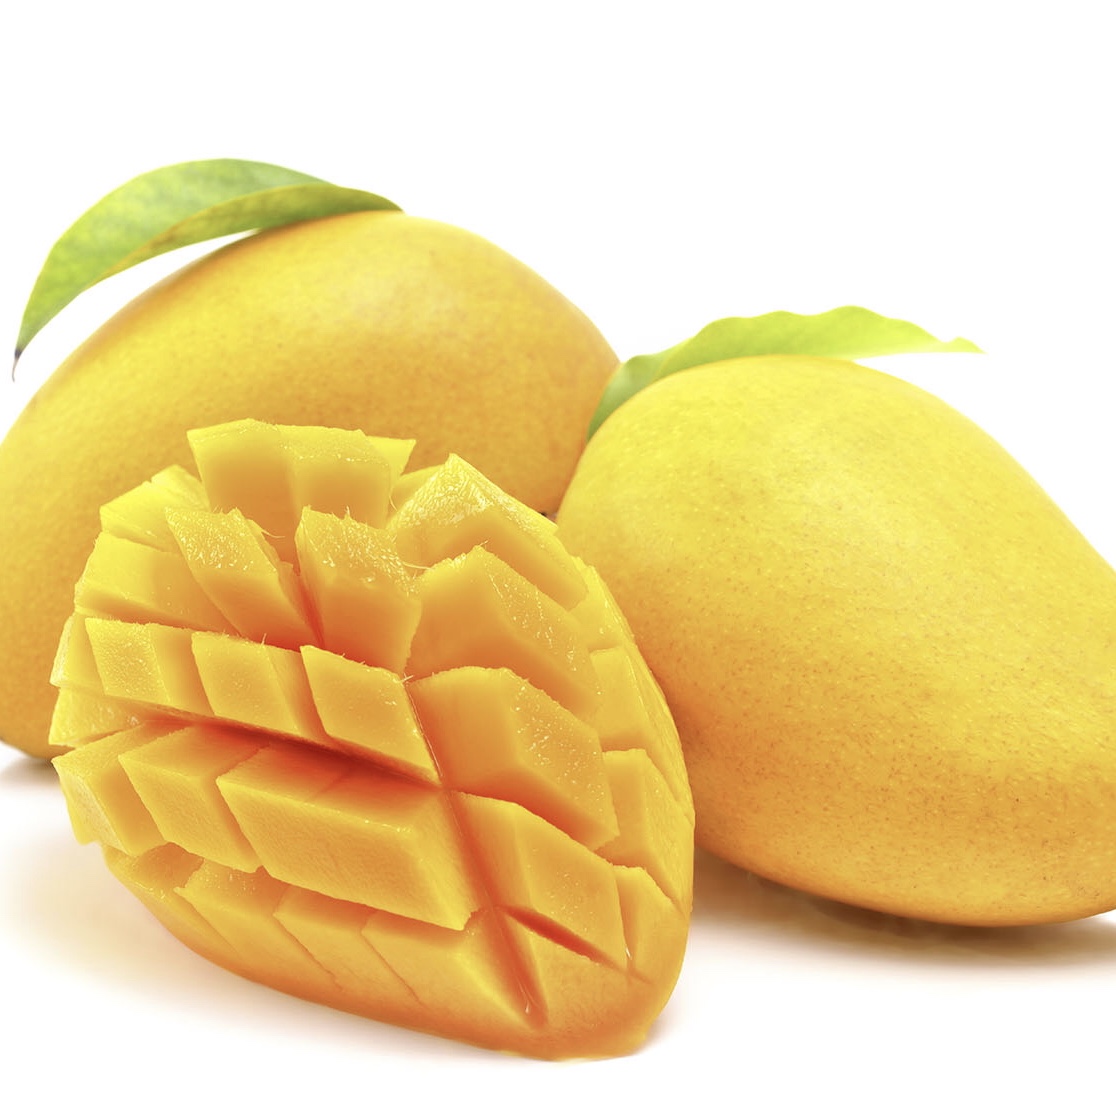 05.Mango